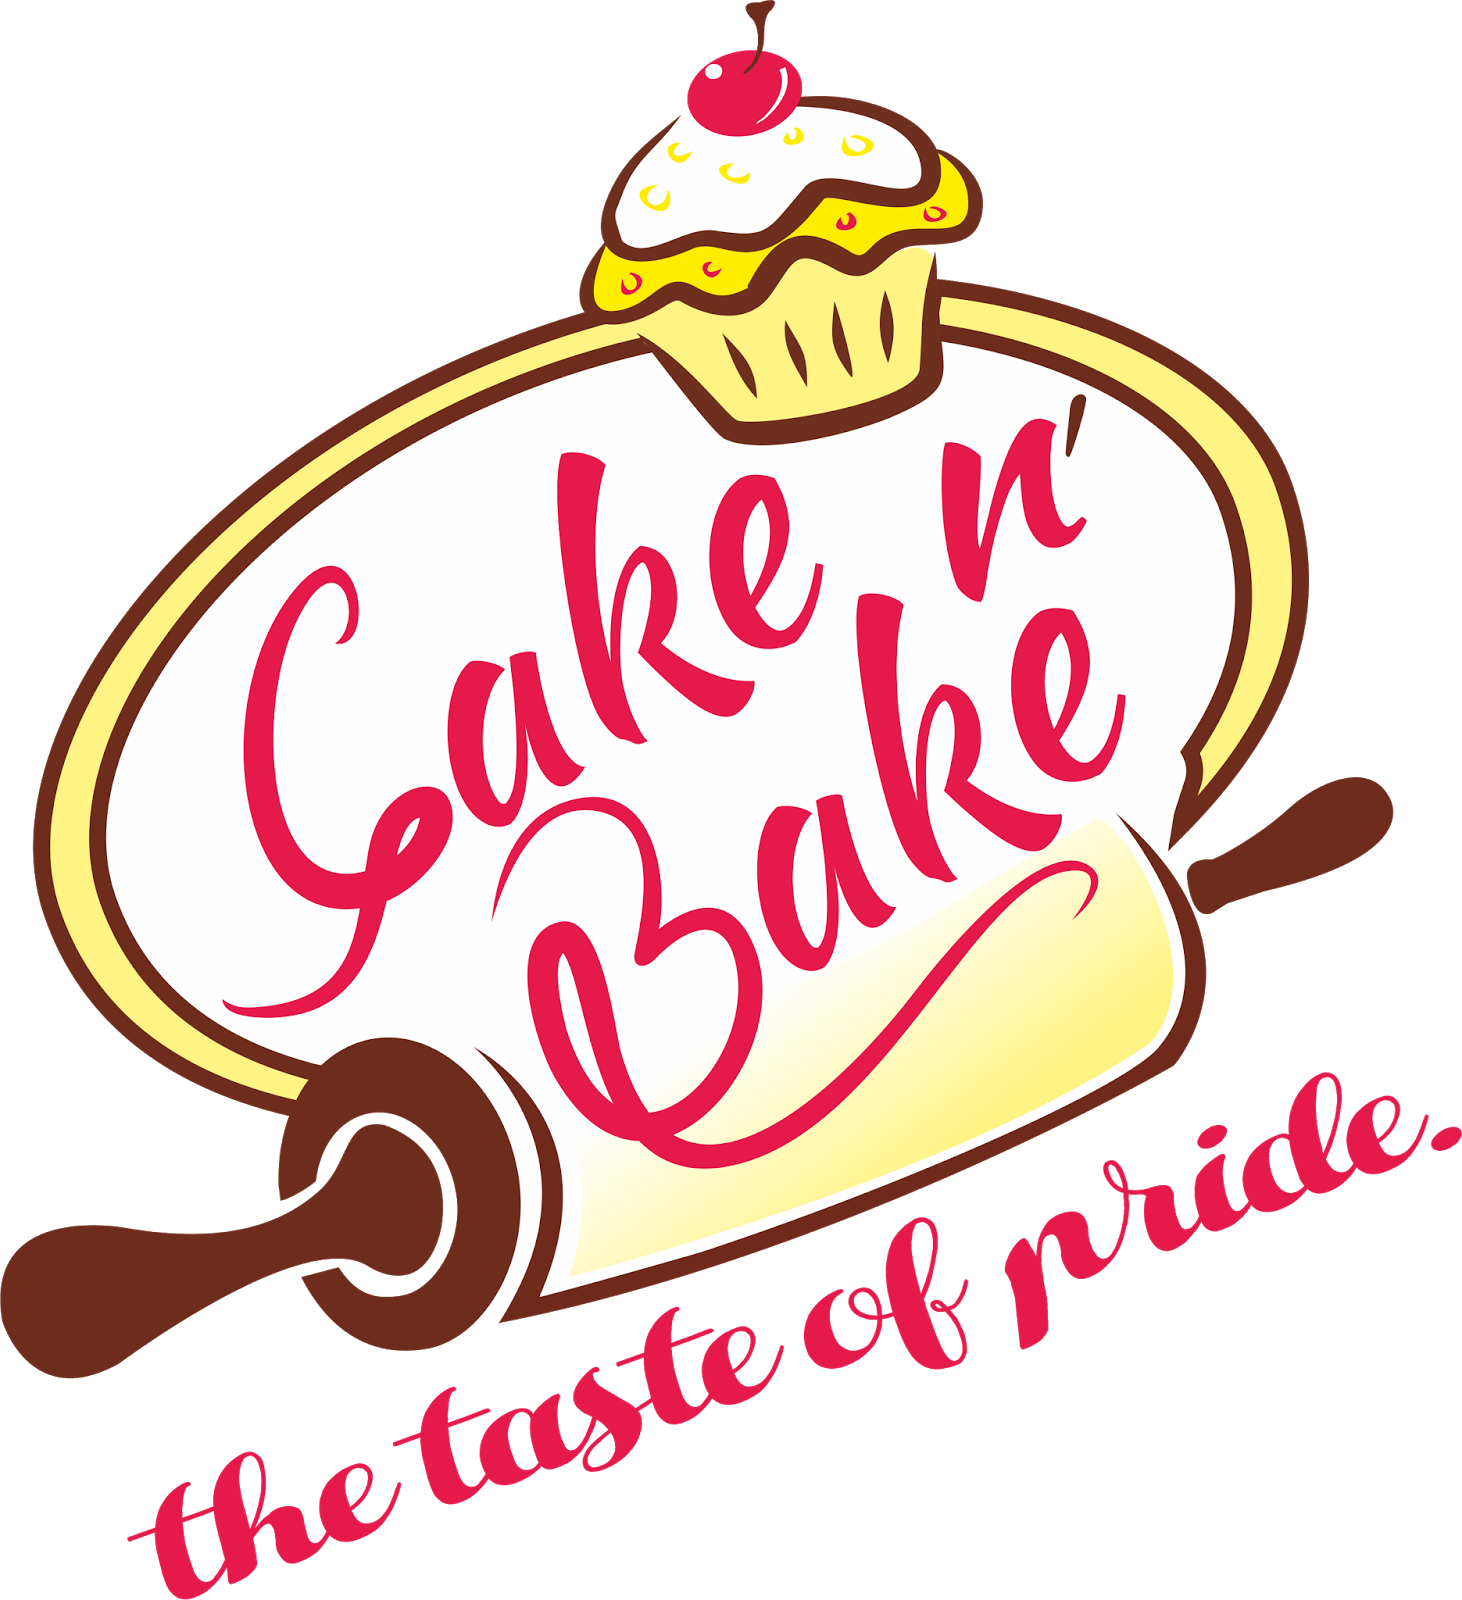 My Portfolio On Cake N Bake - My Portfolio On Cake N Bake (1462x1600)